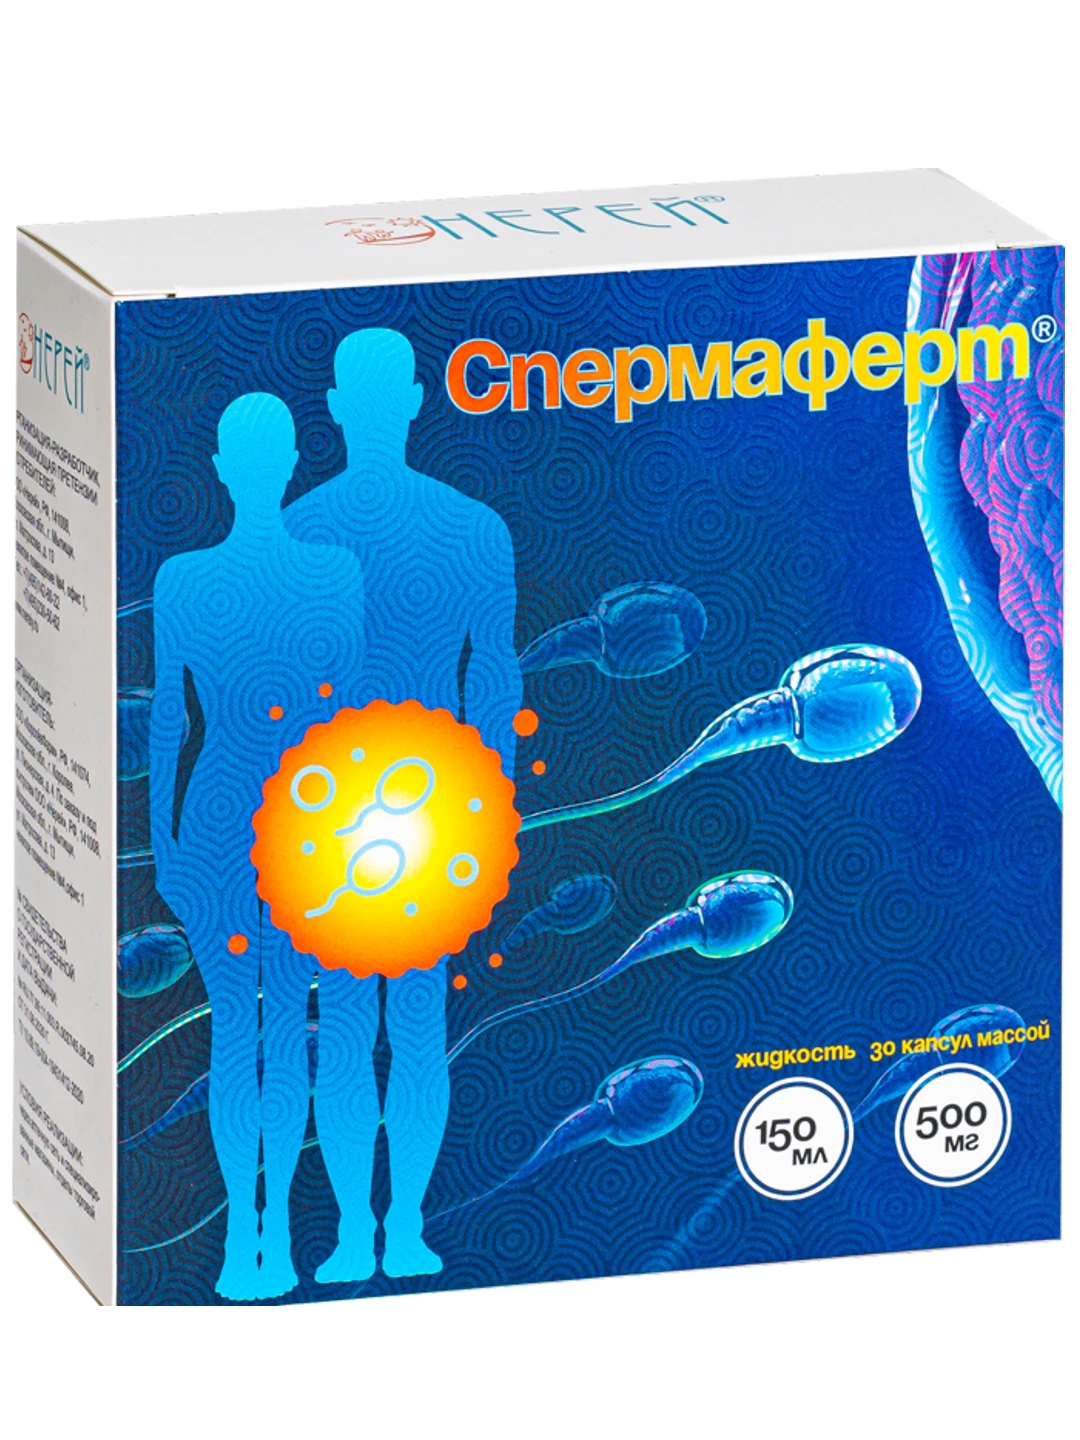 Лучшие препараты для улучшения спермограммы и другие методы повышения качества спермы